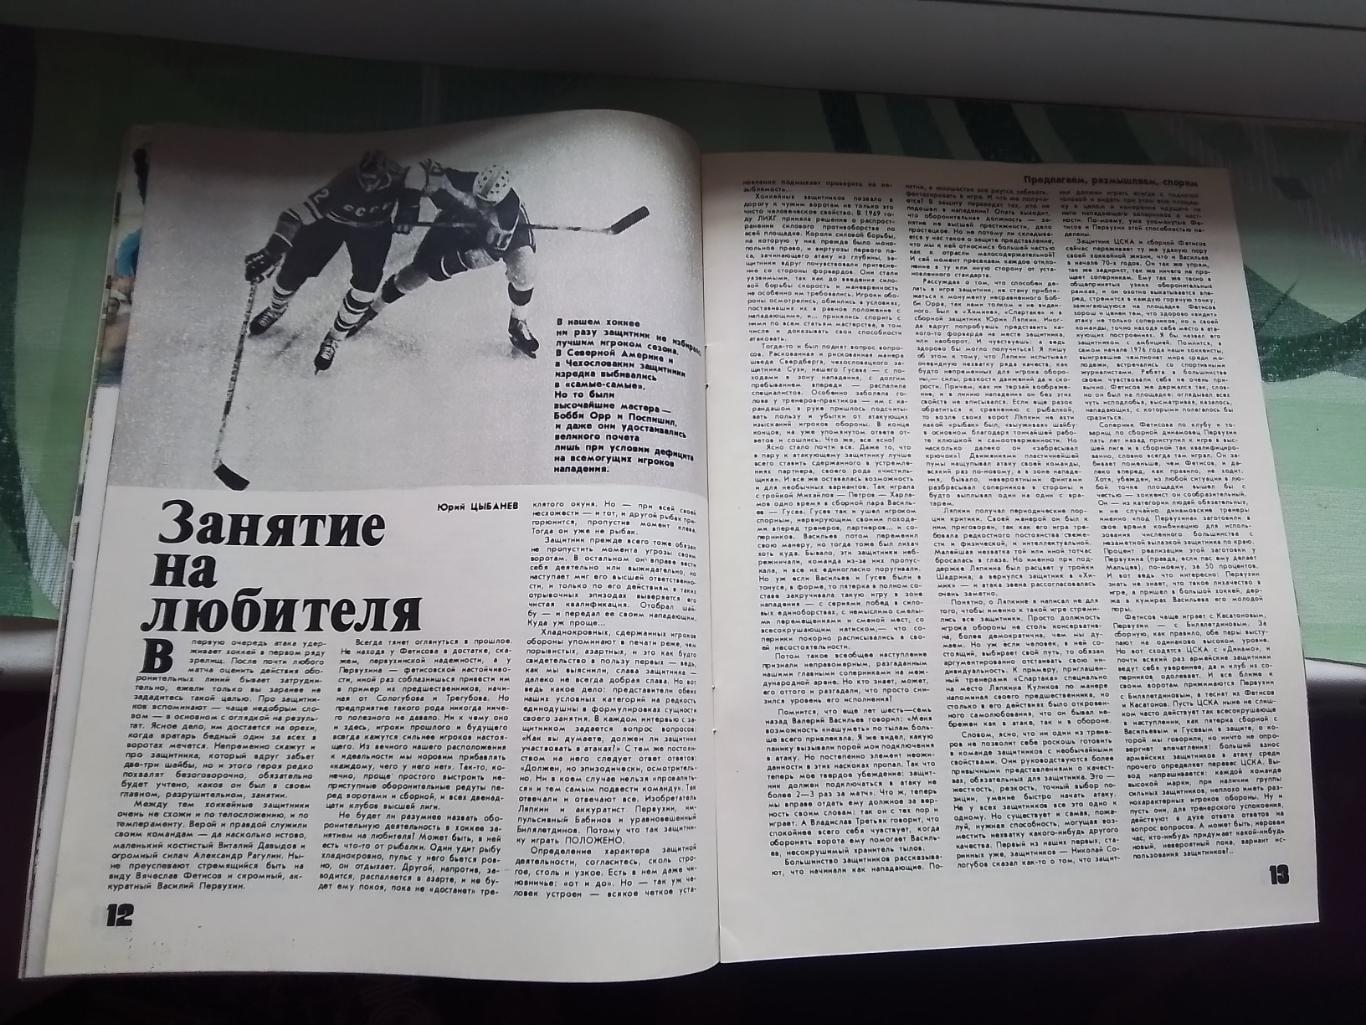 Журнал ФиС 1981 N 9 Защитники сборной хоккей Бьерн Борг теннис 2